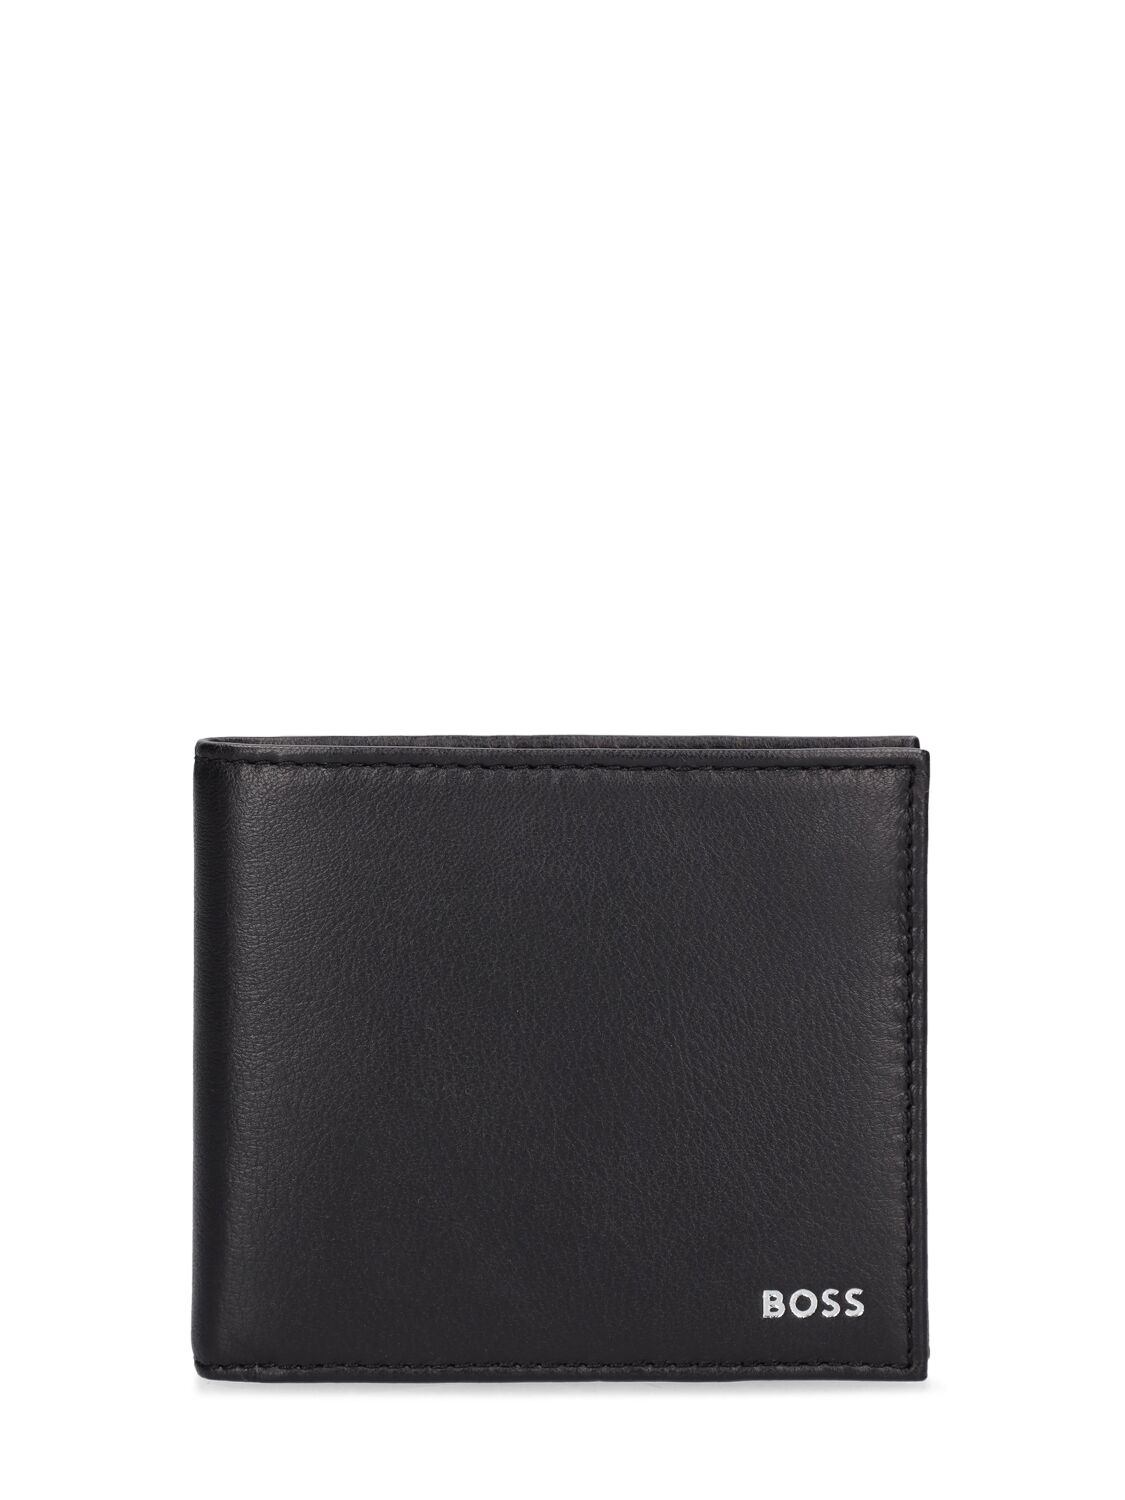 Hugo Boss Randy Leather Wallet In Green